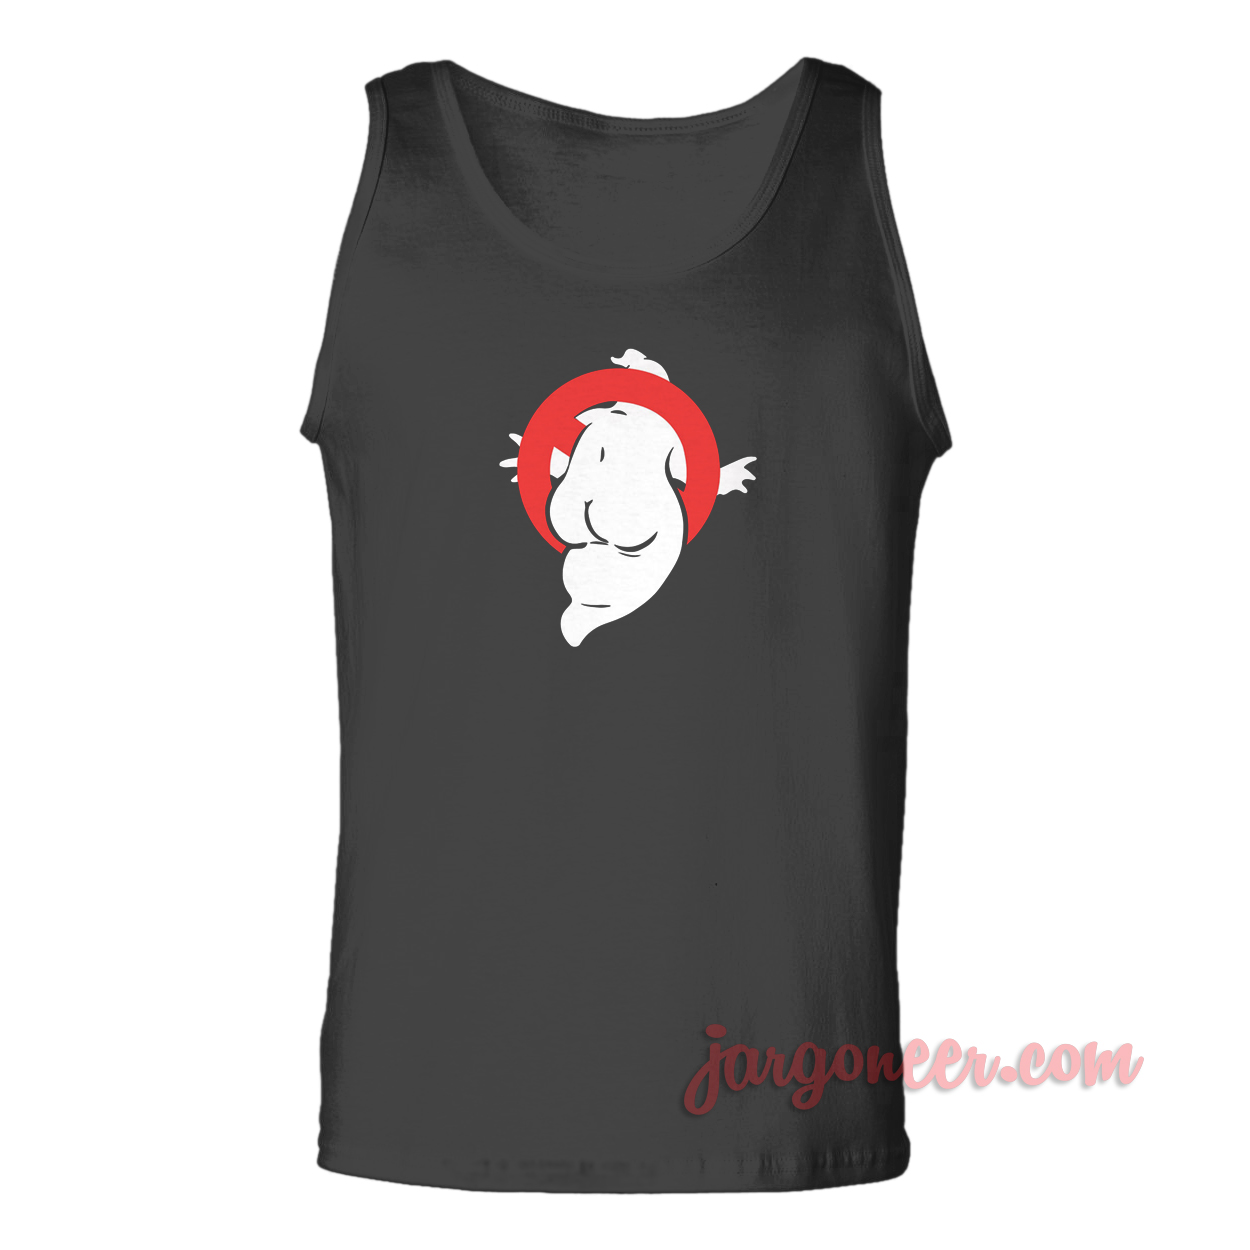 Ghostbuster Parody - Shop Unique Graphic Cool Shirt Designs